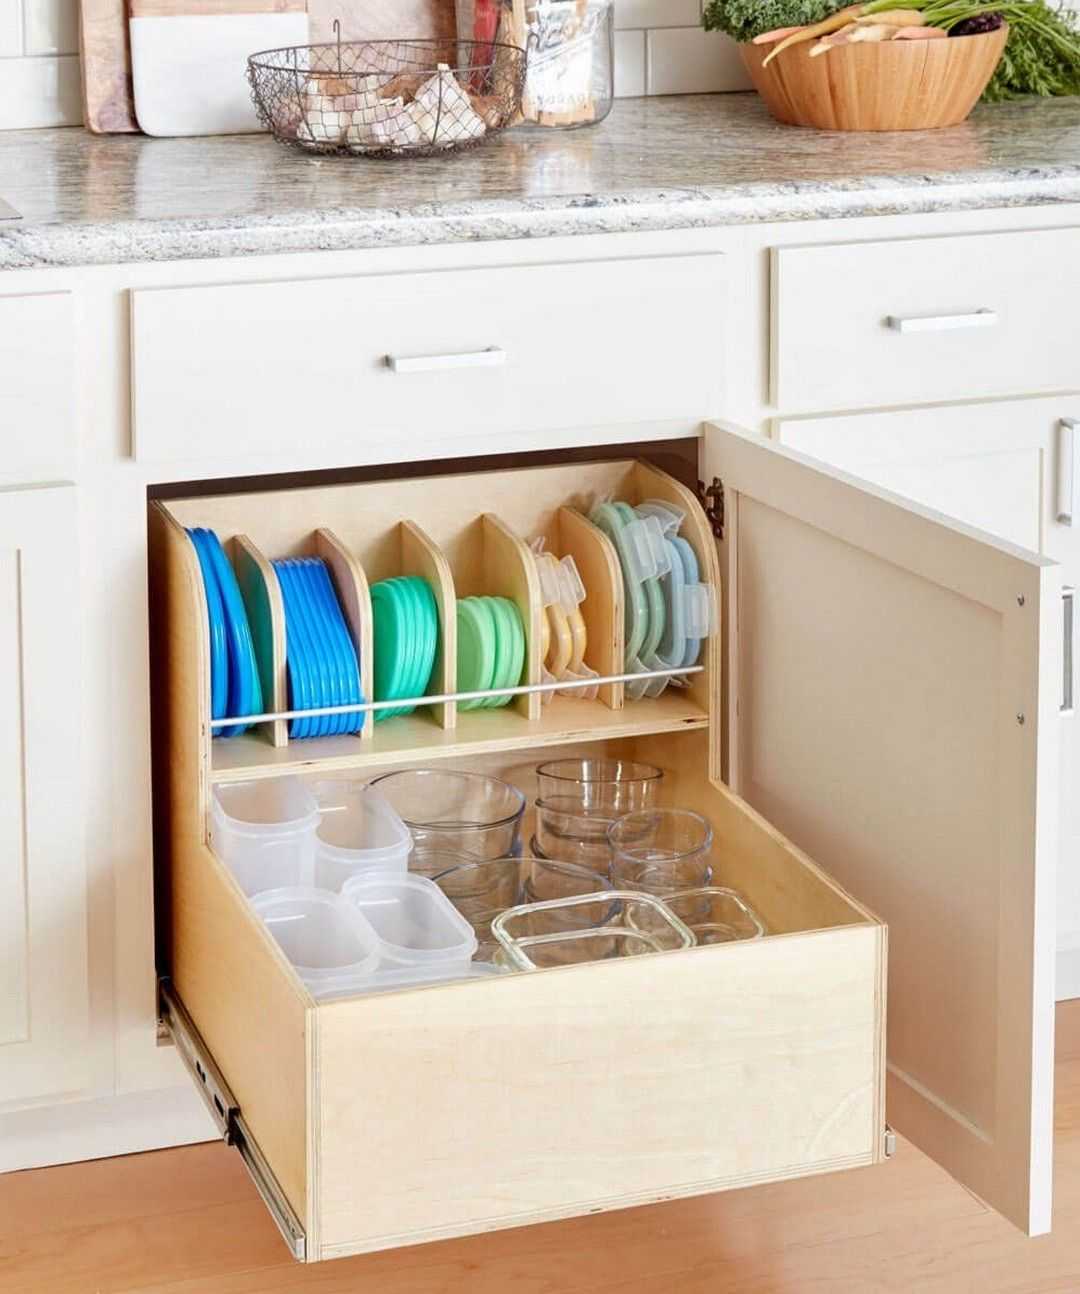 Все о системах хранения кастрюль и сковородок на кухне